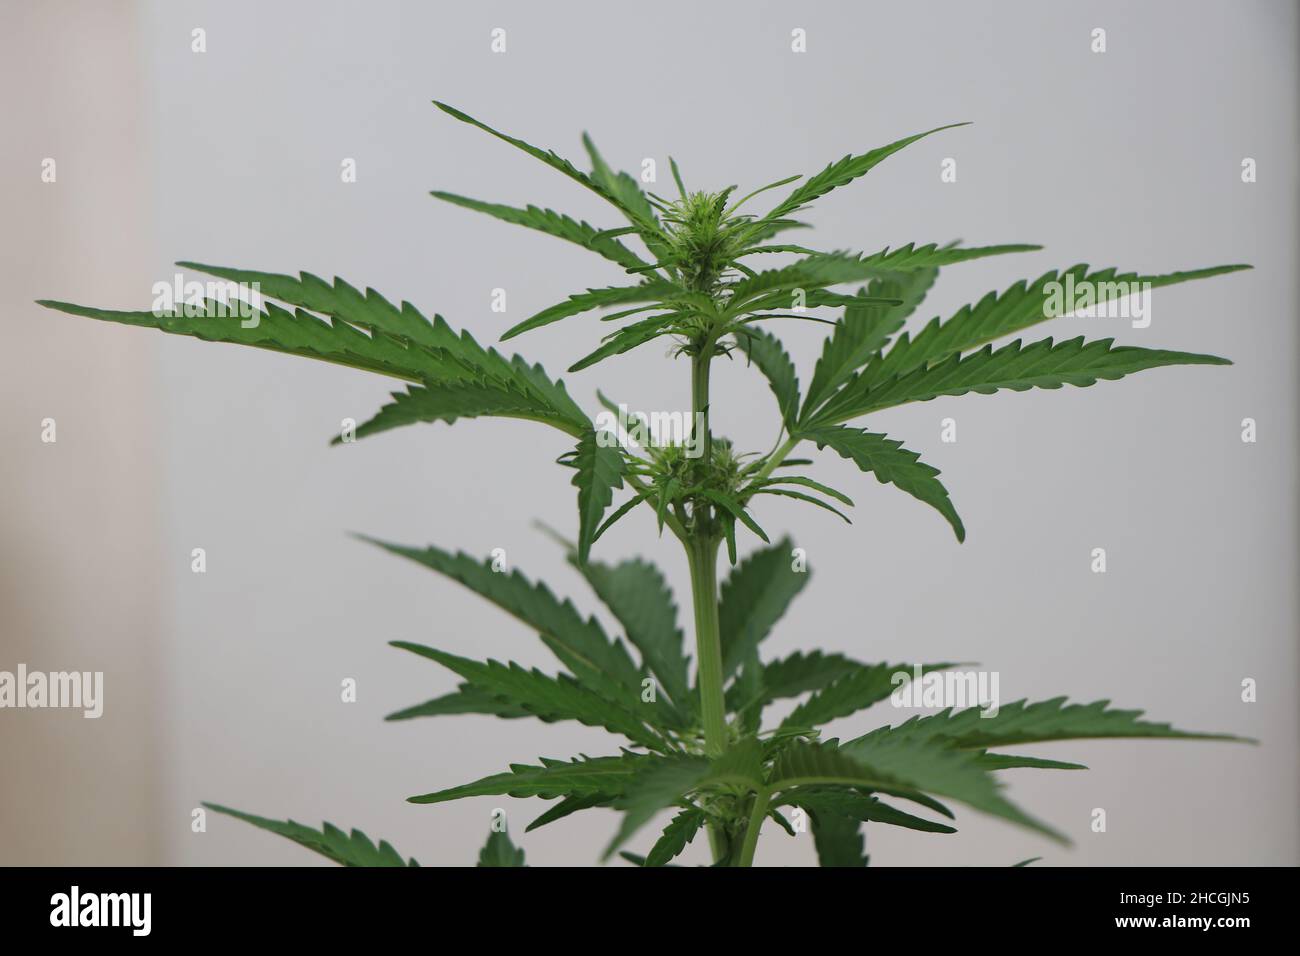 Photo en gros plan d'une plante verte de cannabis sur fond blanc.Photo de haute qualité Banque D'Images